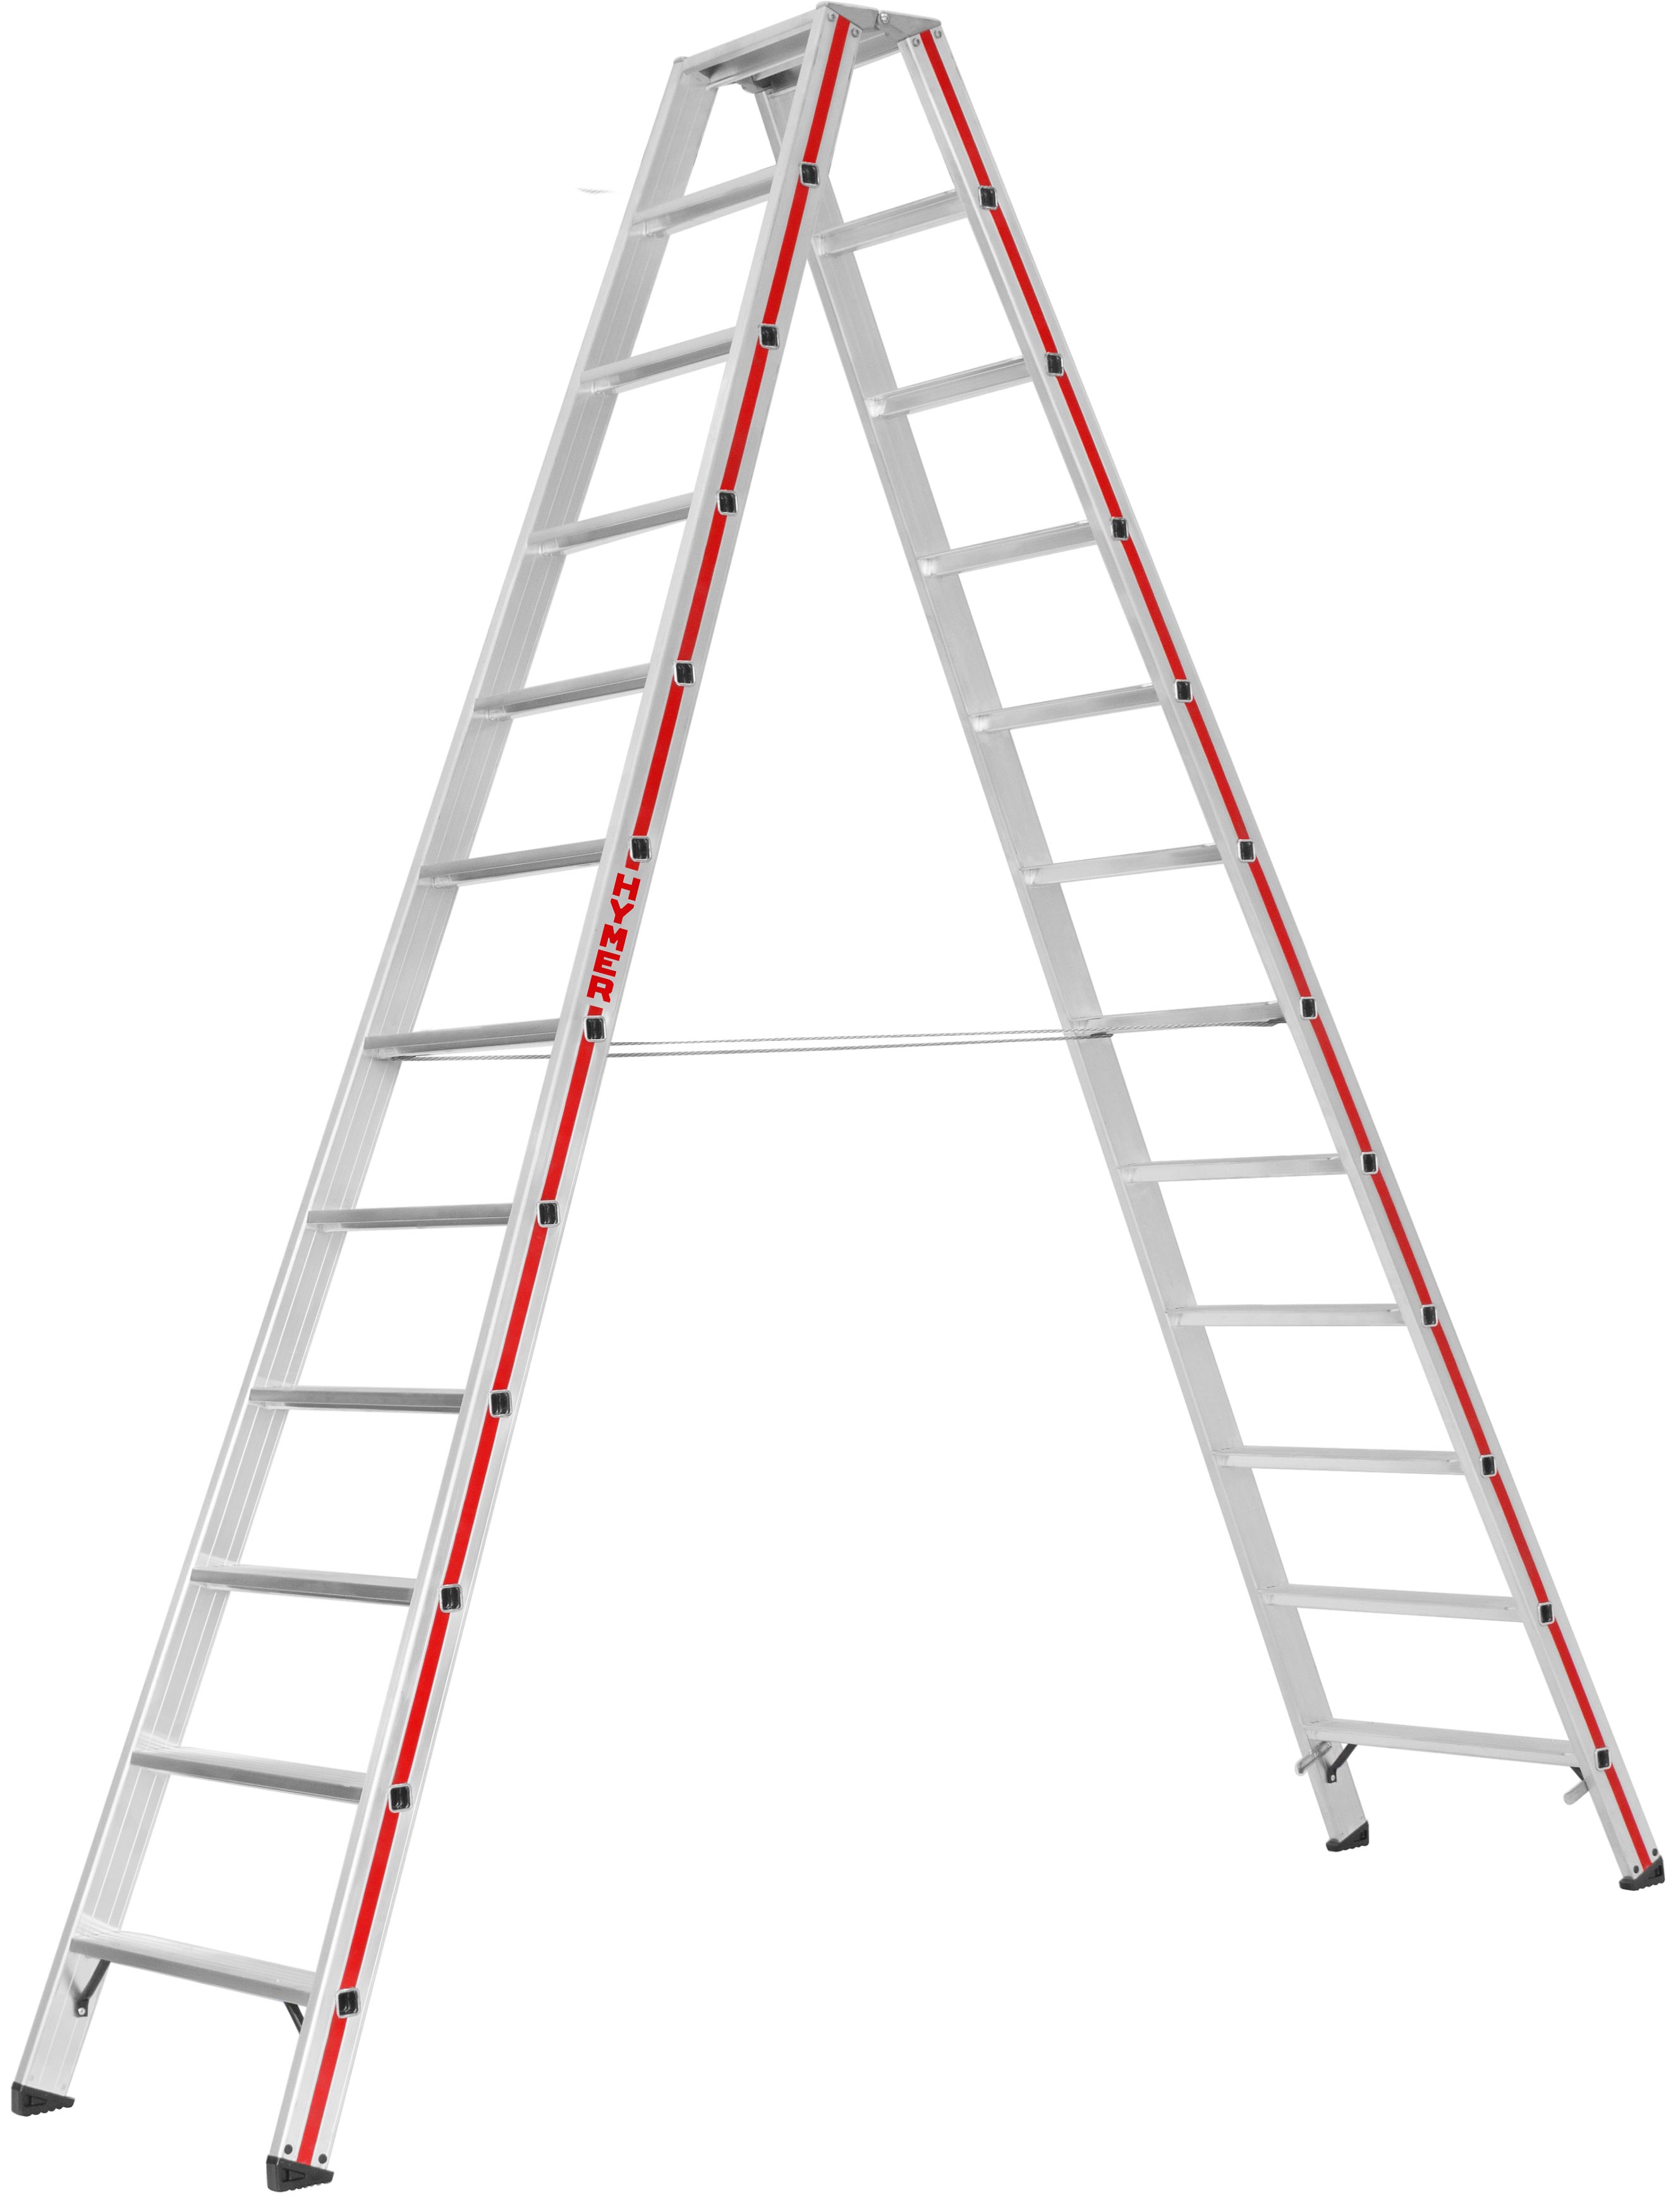 Hymer Stehleiter SC 80 Alu 2x12 Stufen Leiter beidseitig begehbar - Profiprogramm (HY-802424) Bild-01